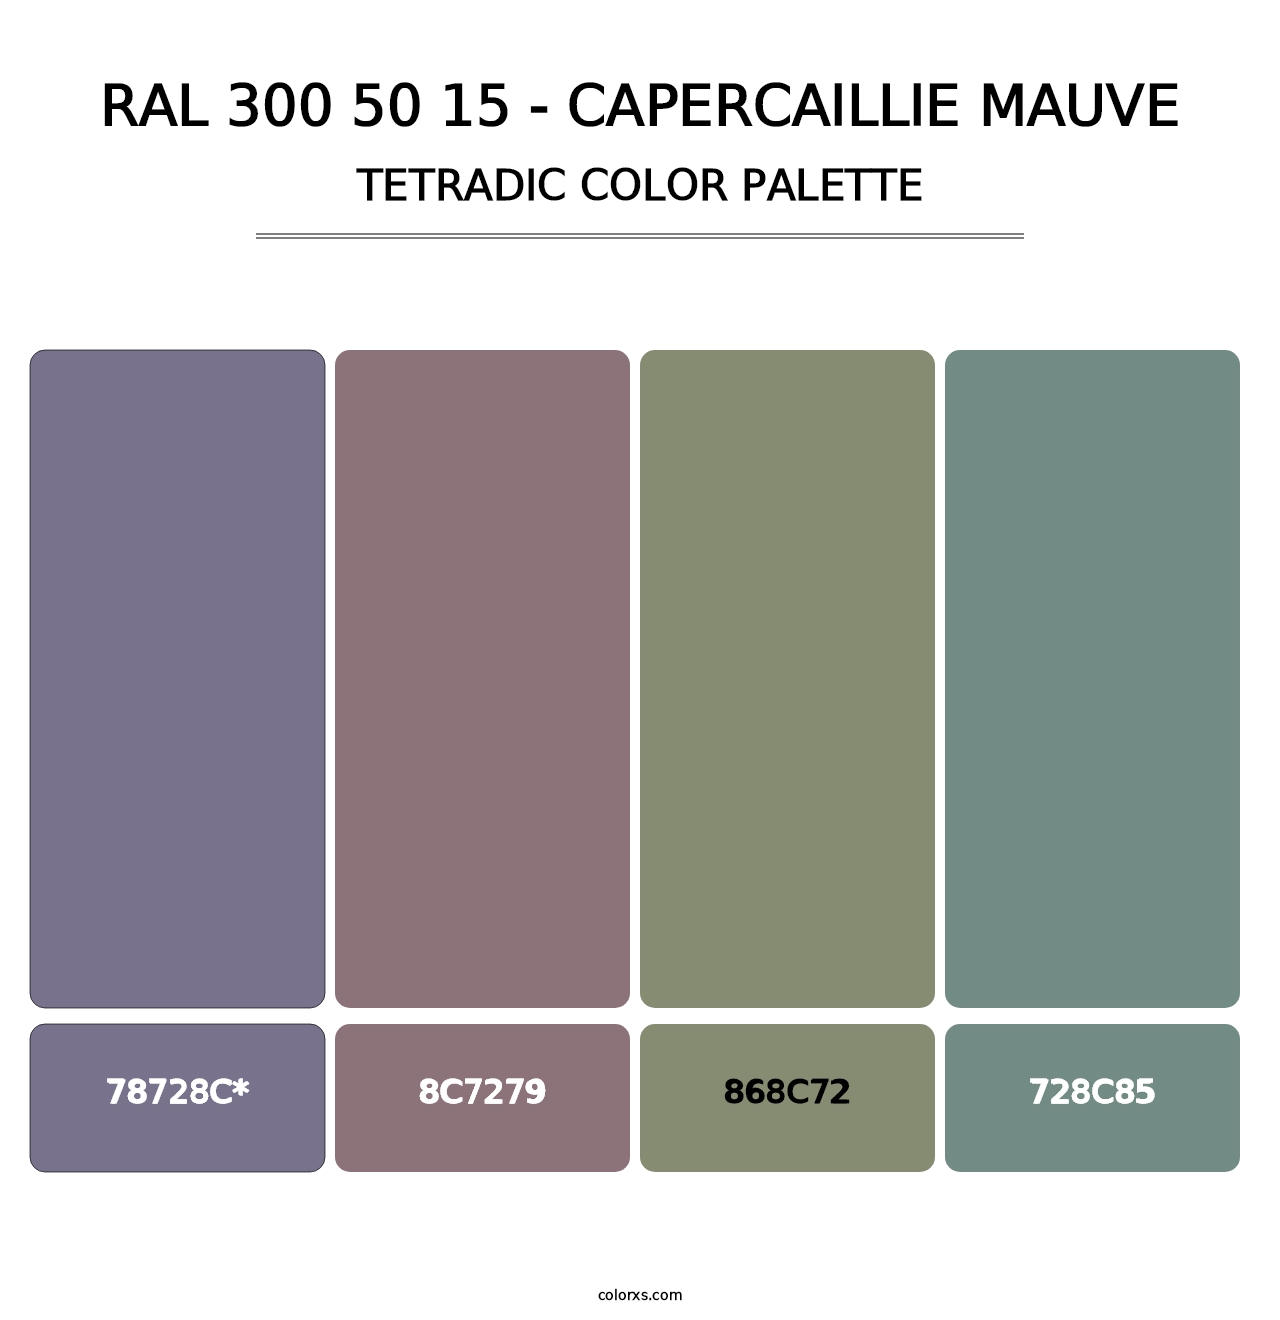 RAL 300 50 15 - Capercaillie Mauve - Tetradic Color Palette